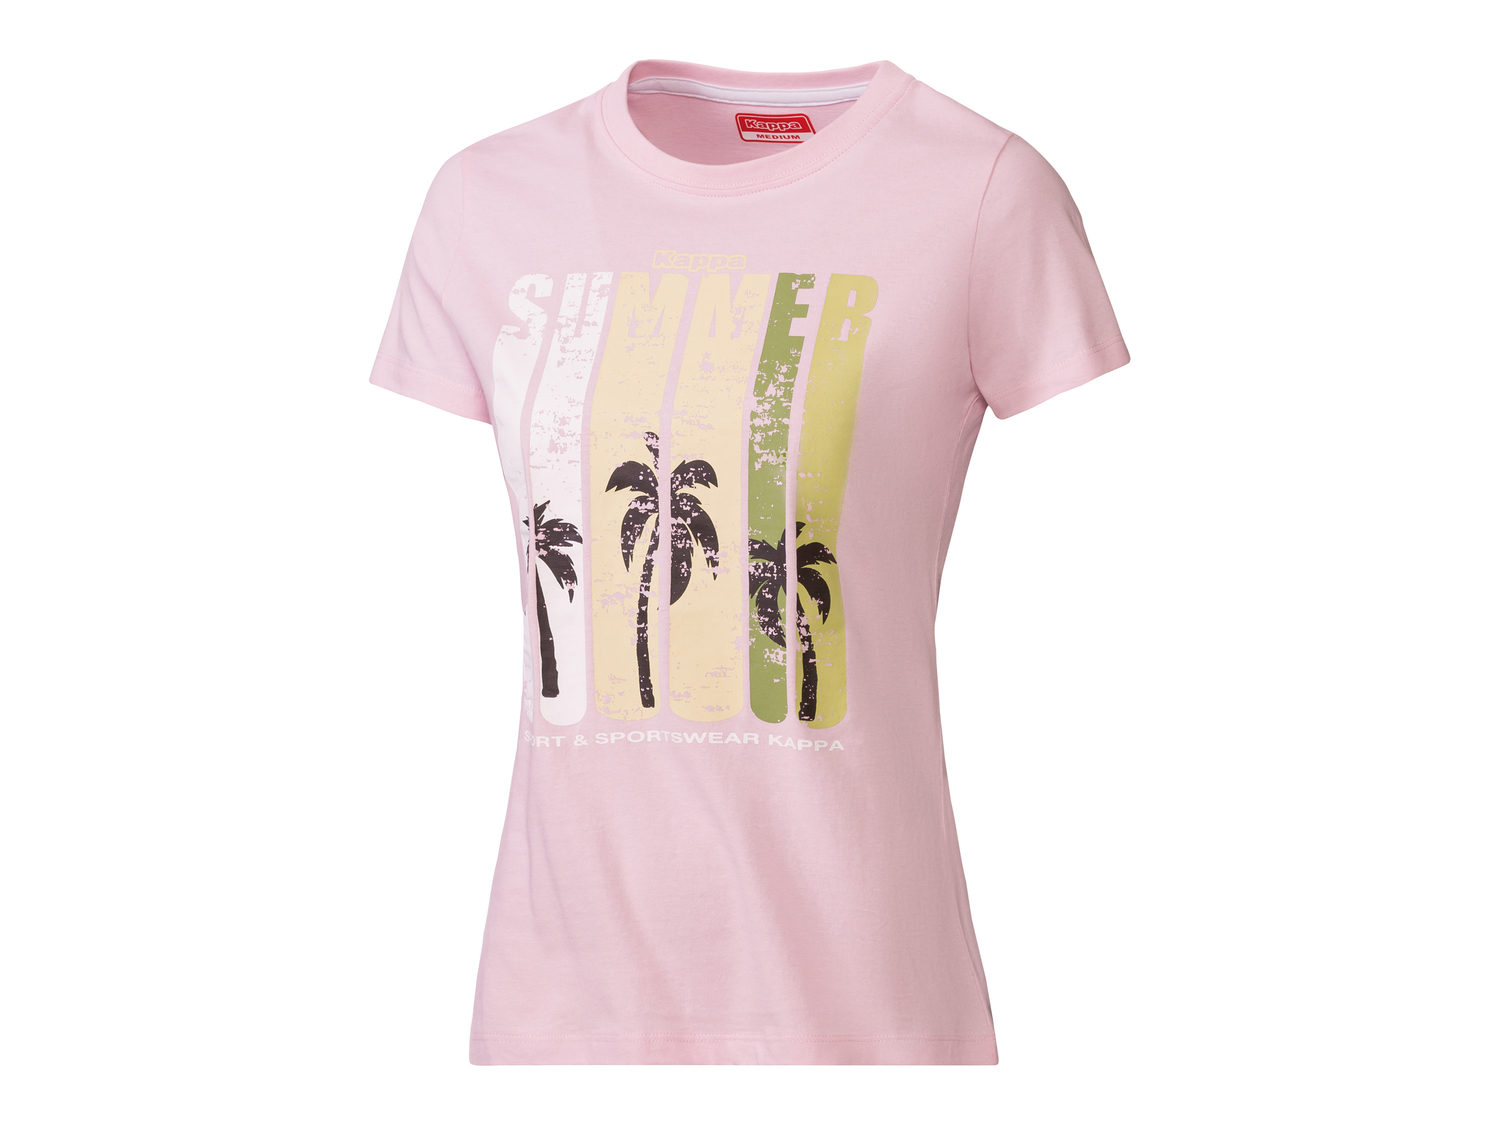 T-shirt da donna Kappa, prezzo 11.99 &#8364; 
Misure: S-XL
Taglie disponibili

Caratteristiche
 ...